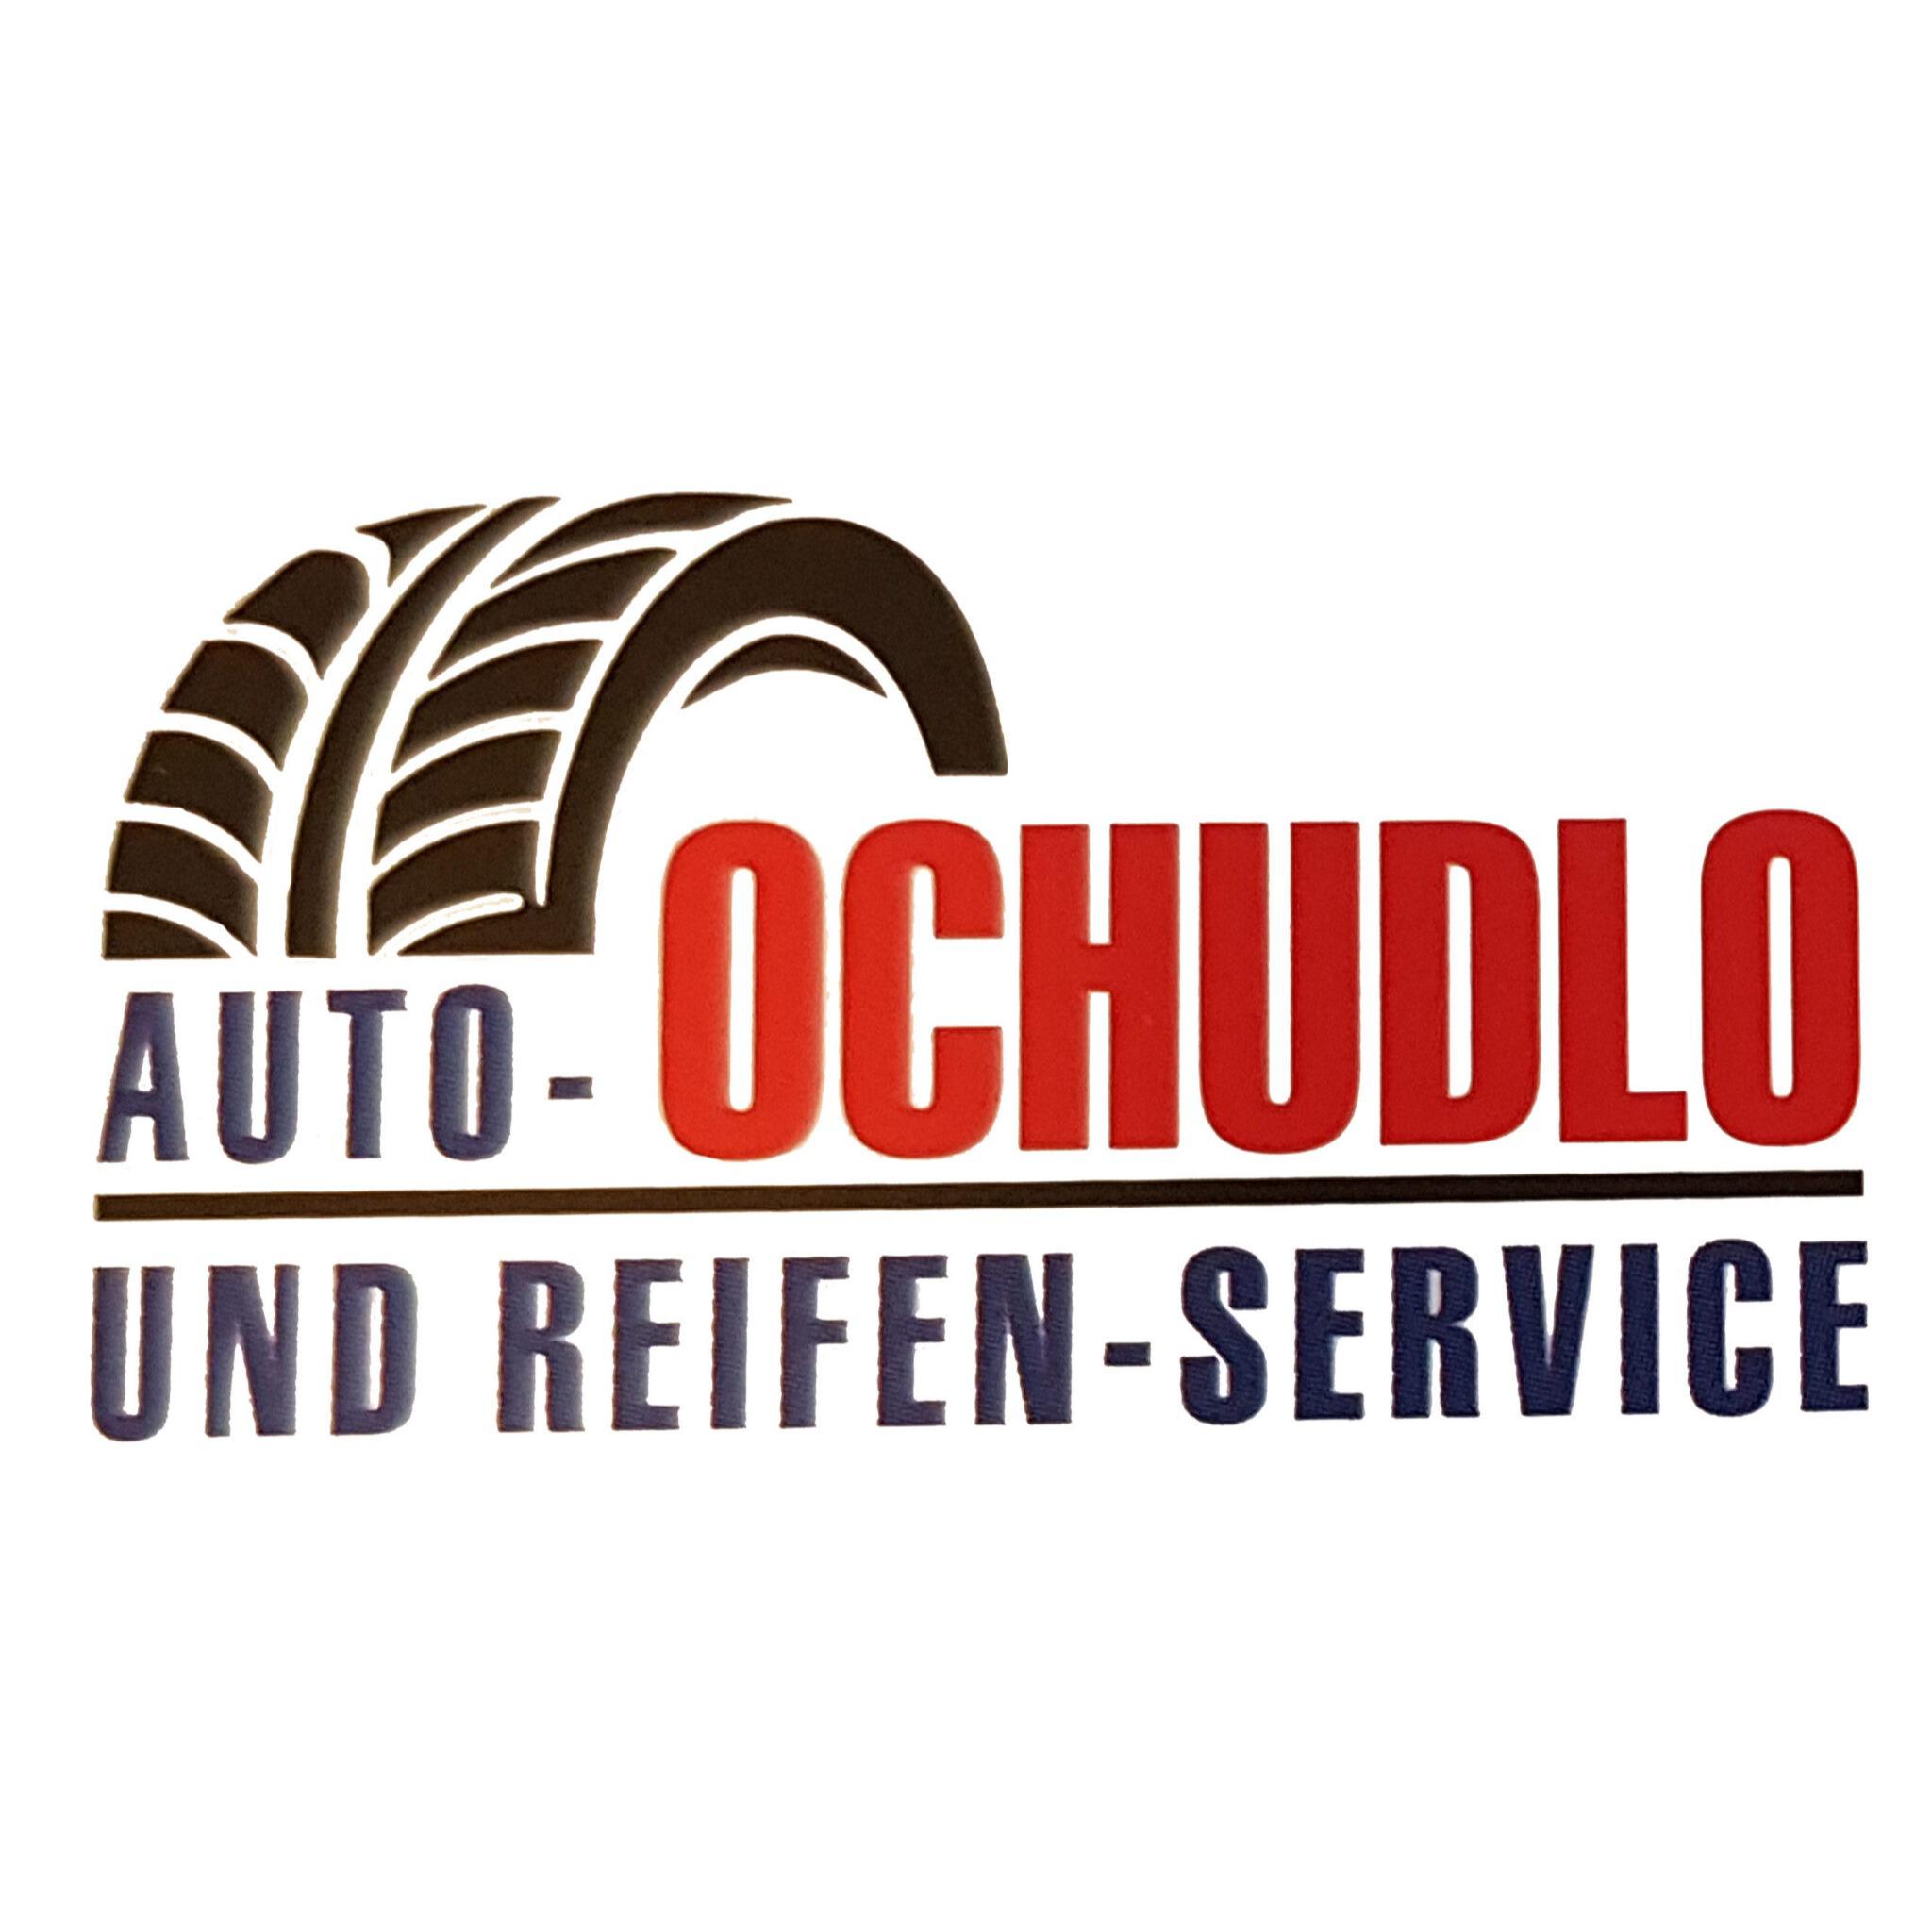 Auto- und Reifenservice Ochudlo in Bottrop - Logo